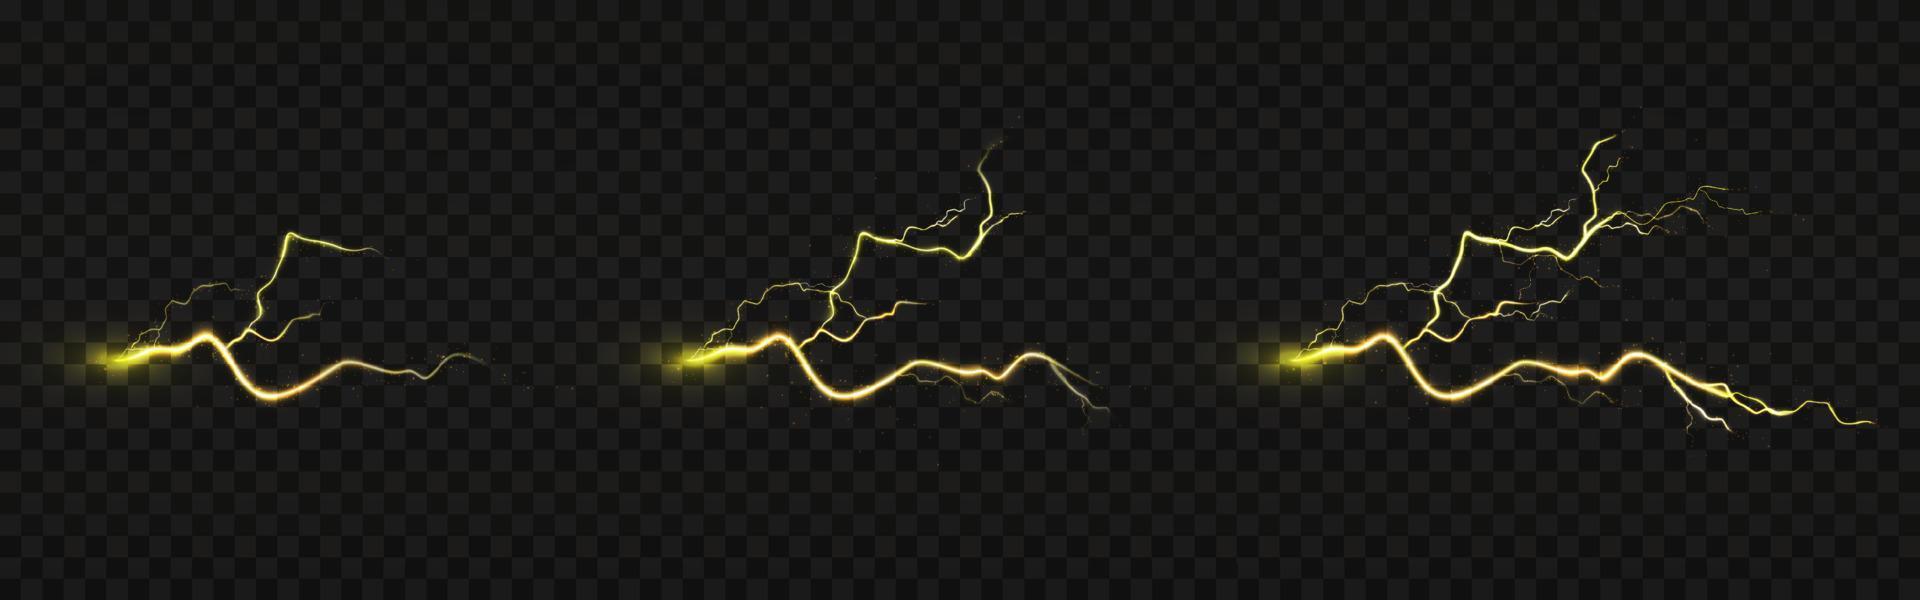 Blitzeinschlag Animation, elektrische Entladung, vektor